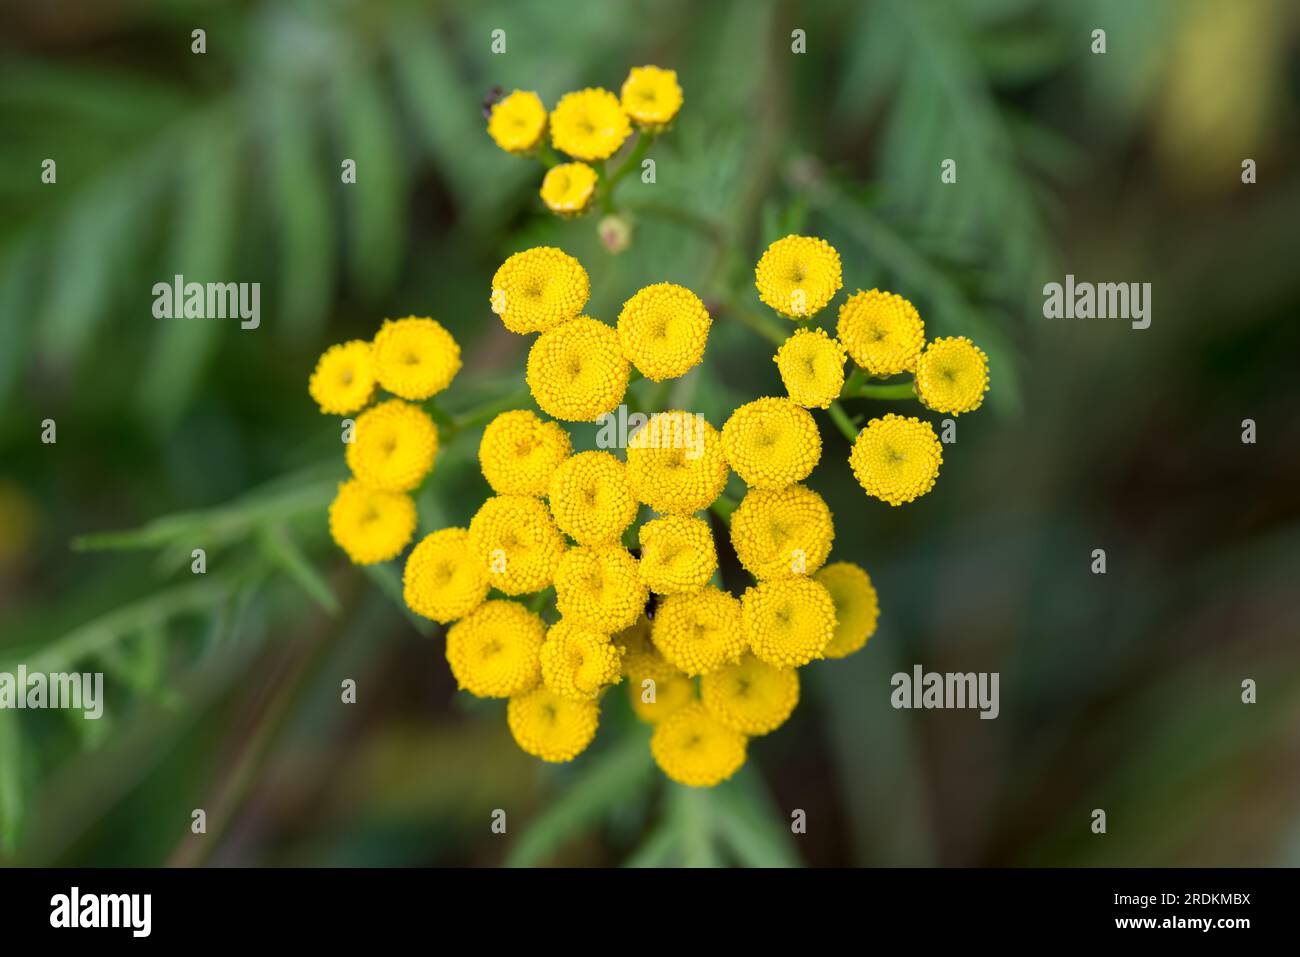 tansie commune, boutons amers fleurs jaunes closeup mise au point sélective Banque D'Images